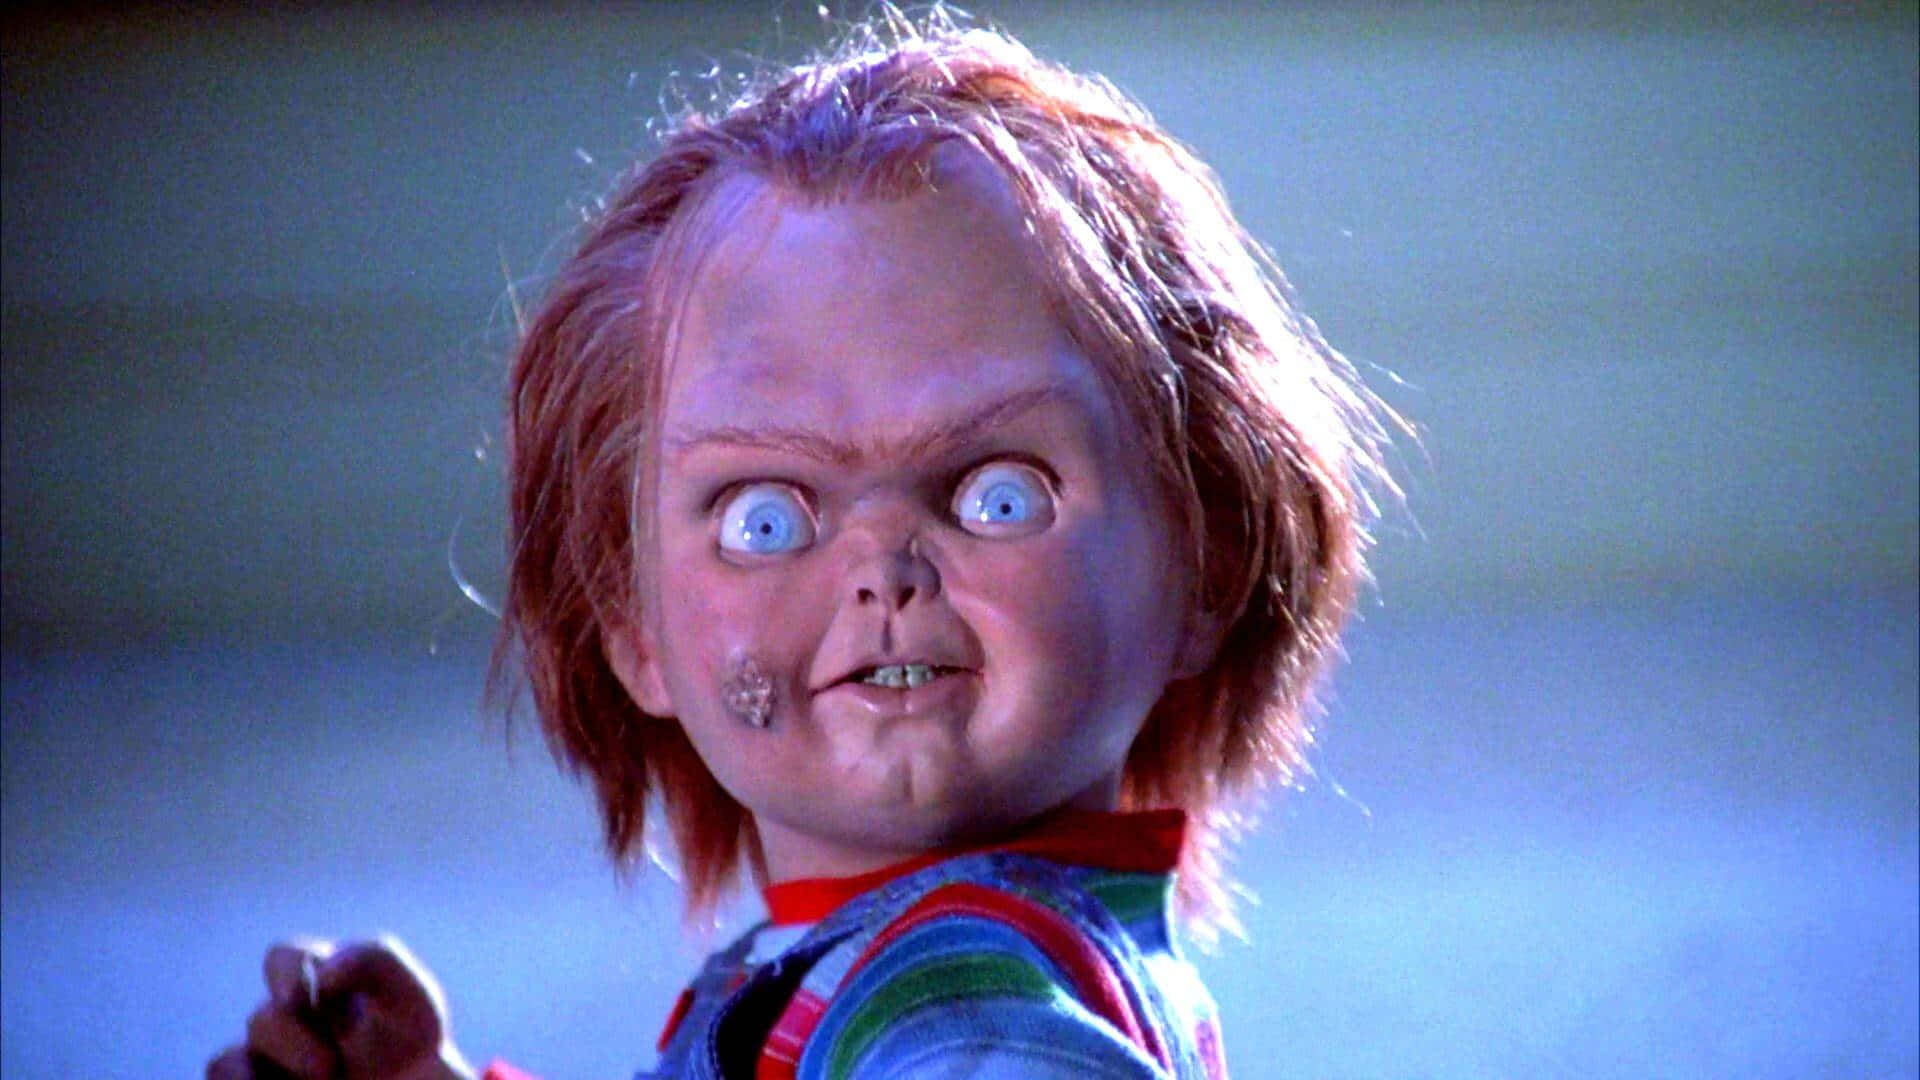 Imagemdo Chucky, O Boneco Assassino, Do Filme Brinquedo Assassino, Com Uma Expressão Engraçada E Assustadora, Como Papel De Parede De Computador Ou Celular.